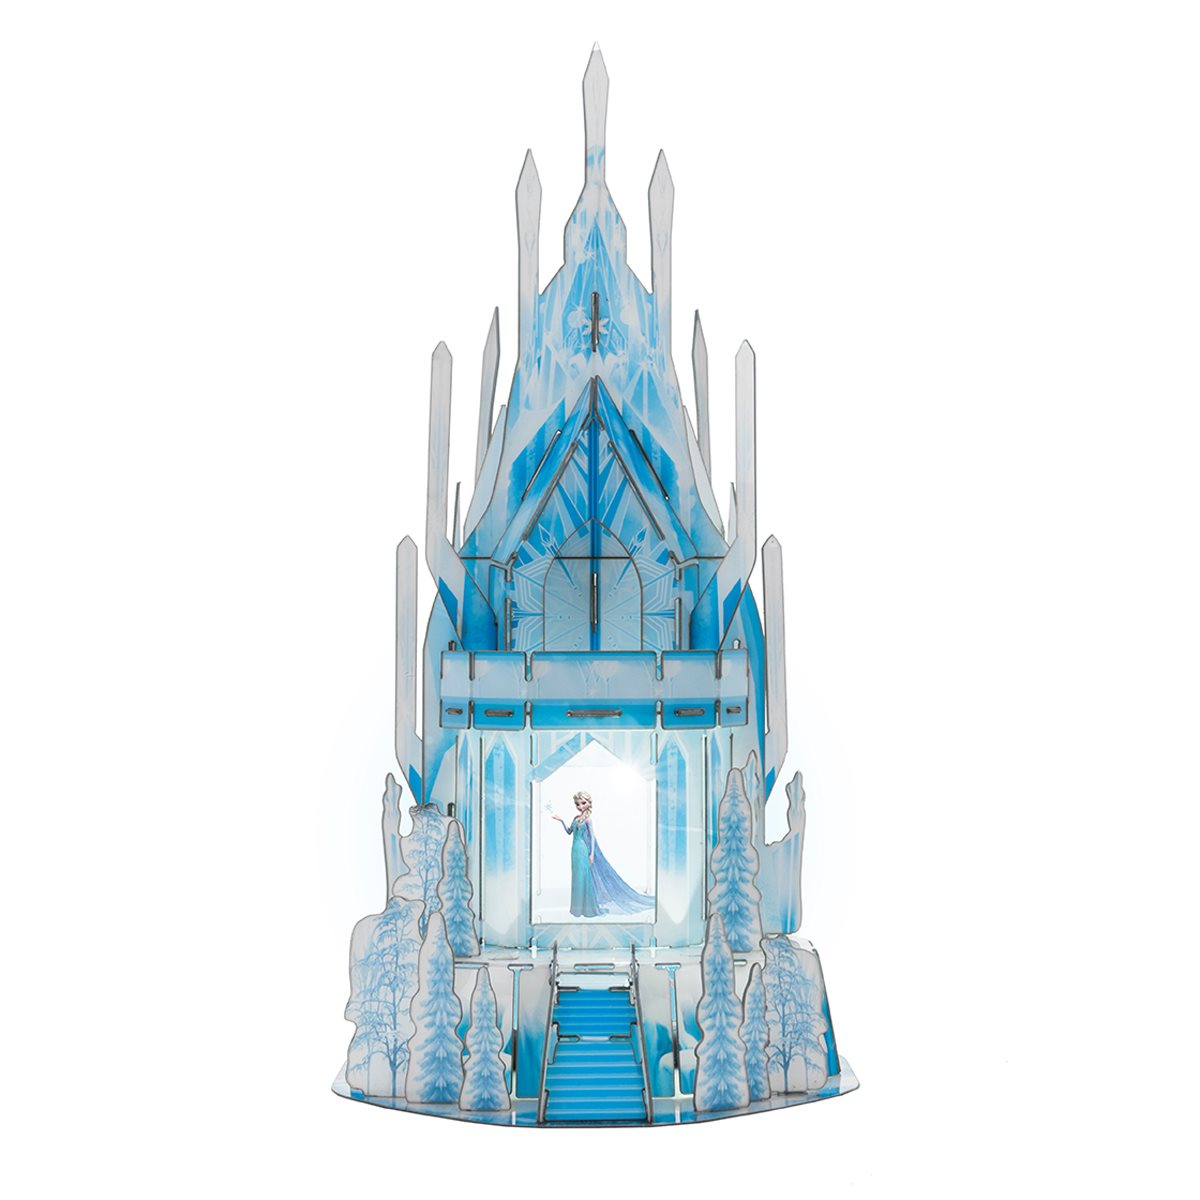 Details about   Disney's Frozen II ARENDELLE CASTLE & ICE CASTLE 3D Puzzle 343 pieces BRAND NEW 